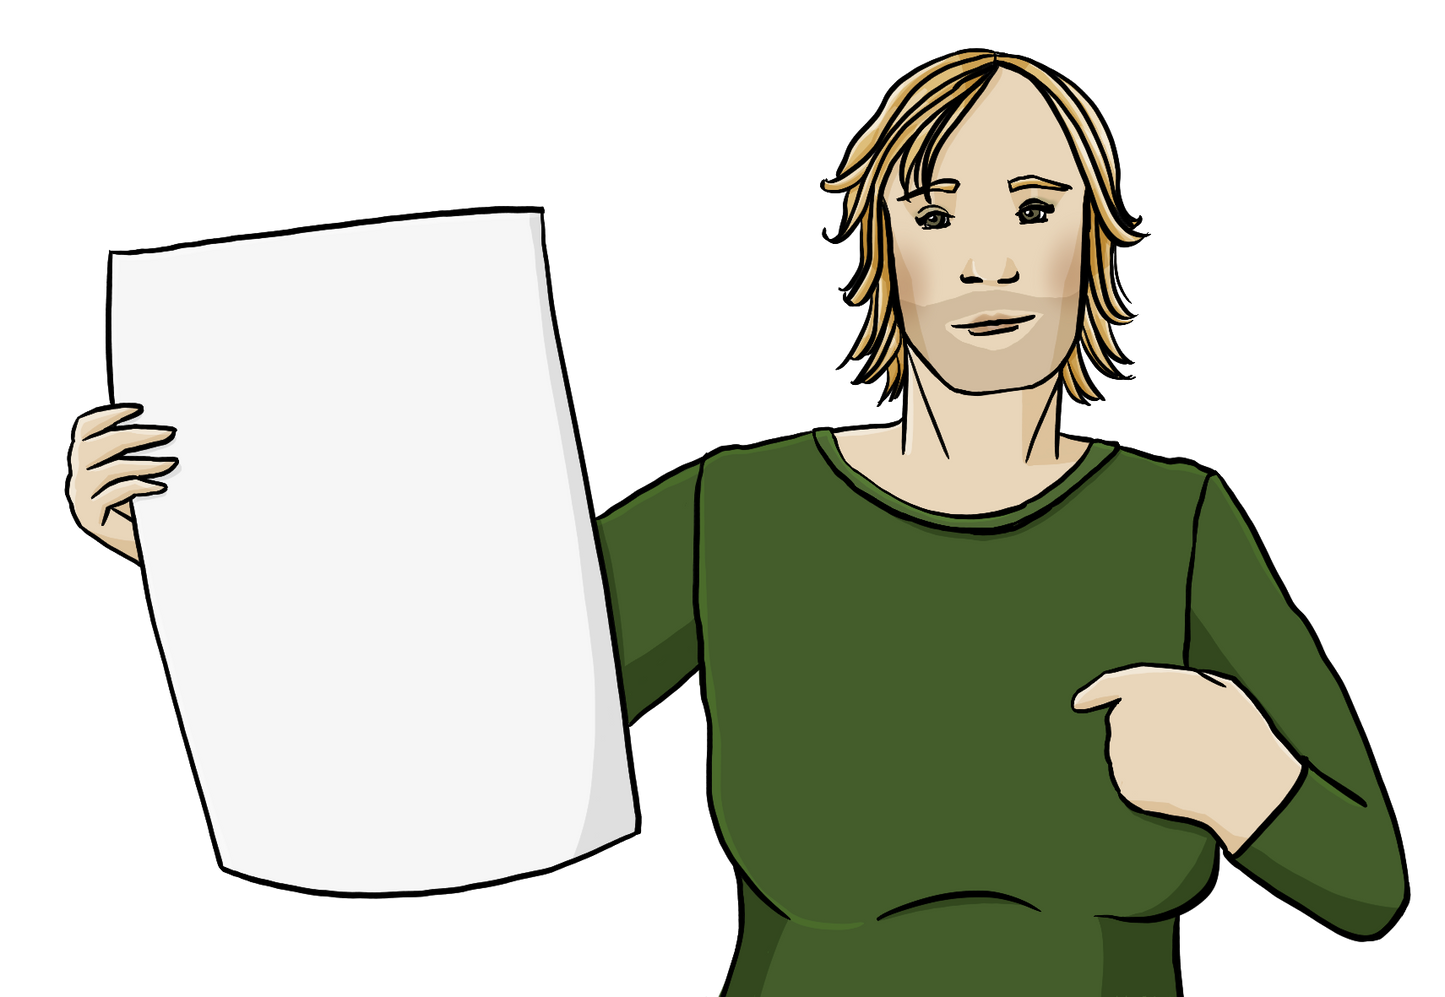 Eine Person mit halblangen Haaren, langen Wimpern und Dreitagebart. Die Person zeigt auf sich. Sie hält ein leeres Plakat in der Hand.